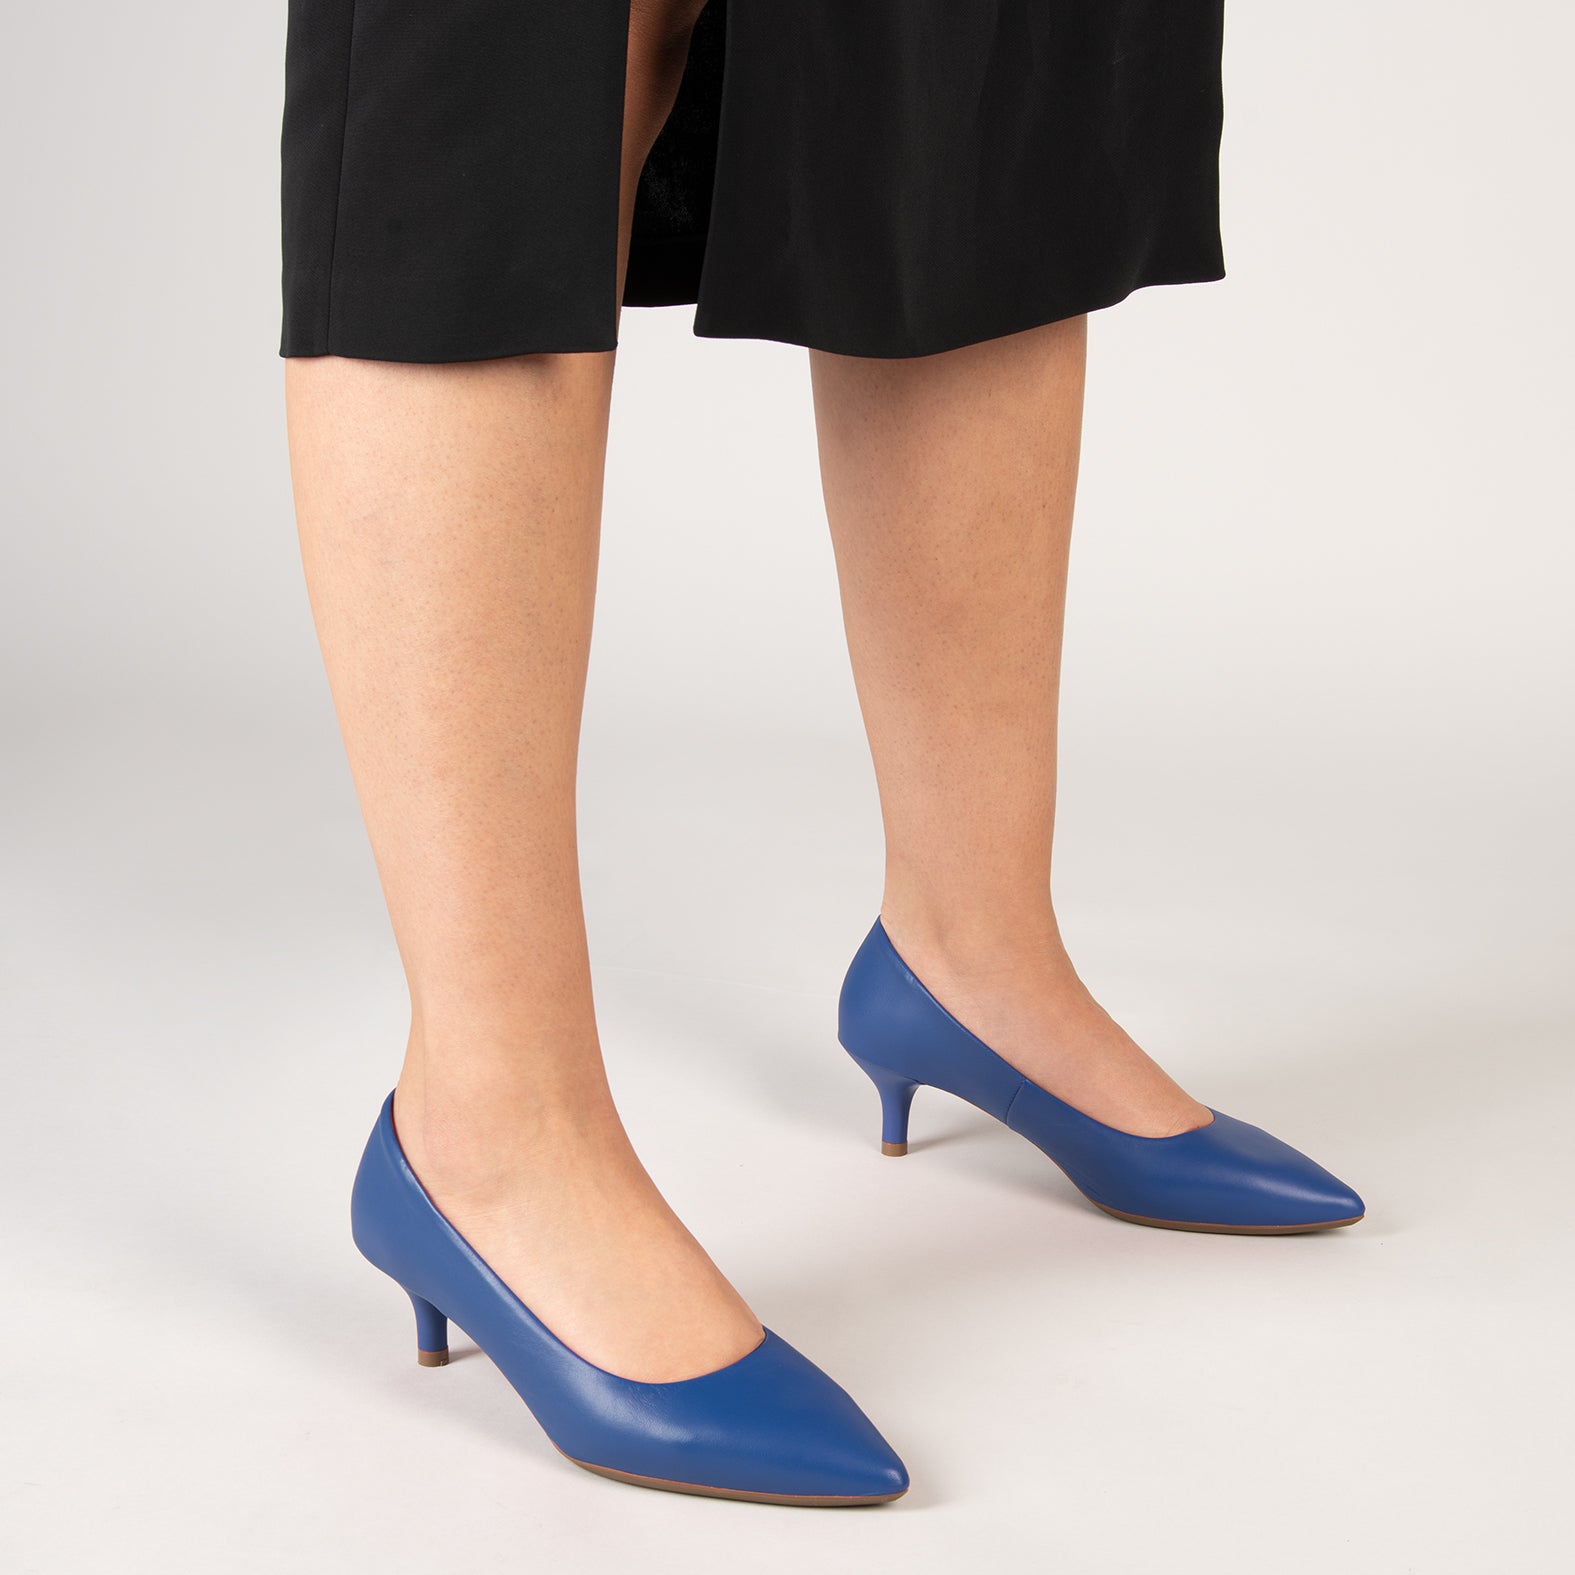 URBAN KITTEN – ELECTRIC BLUE nappa leather kitten heels